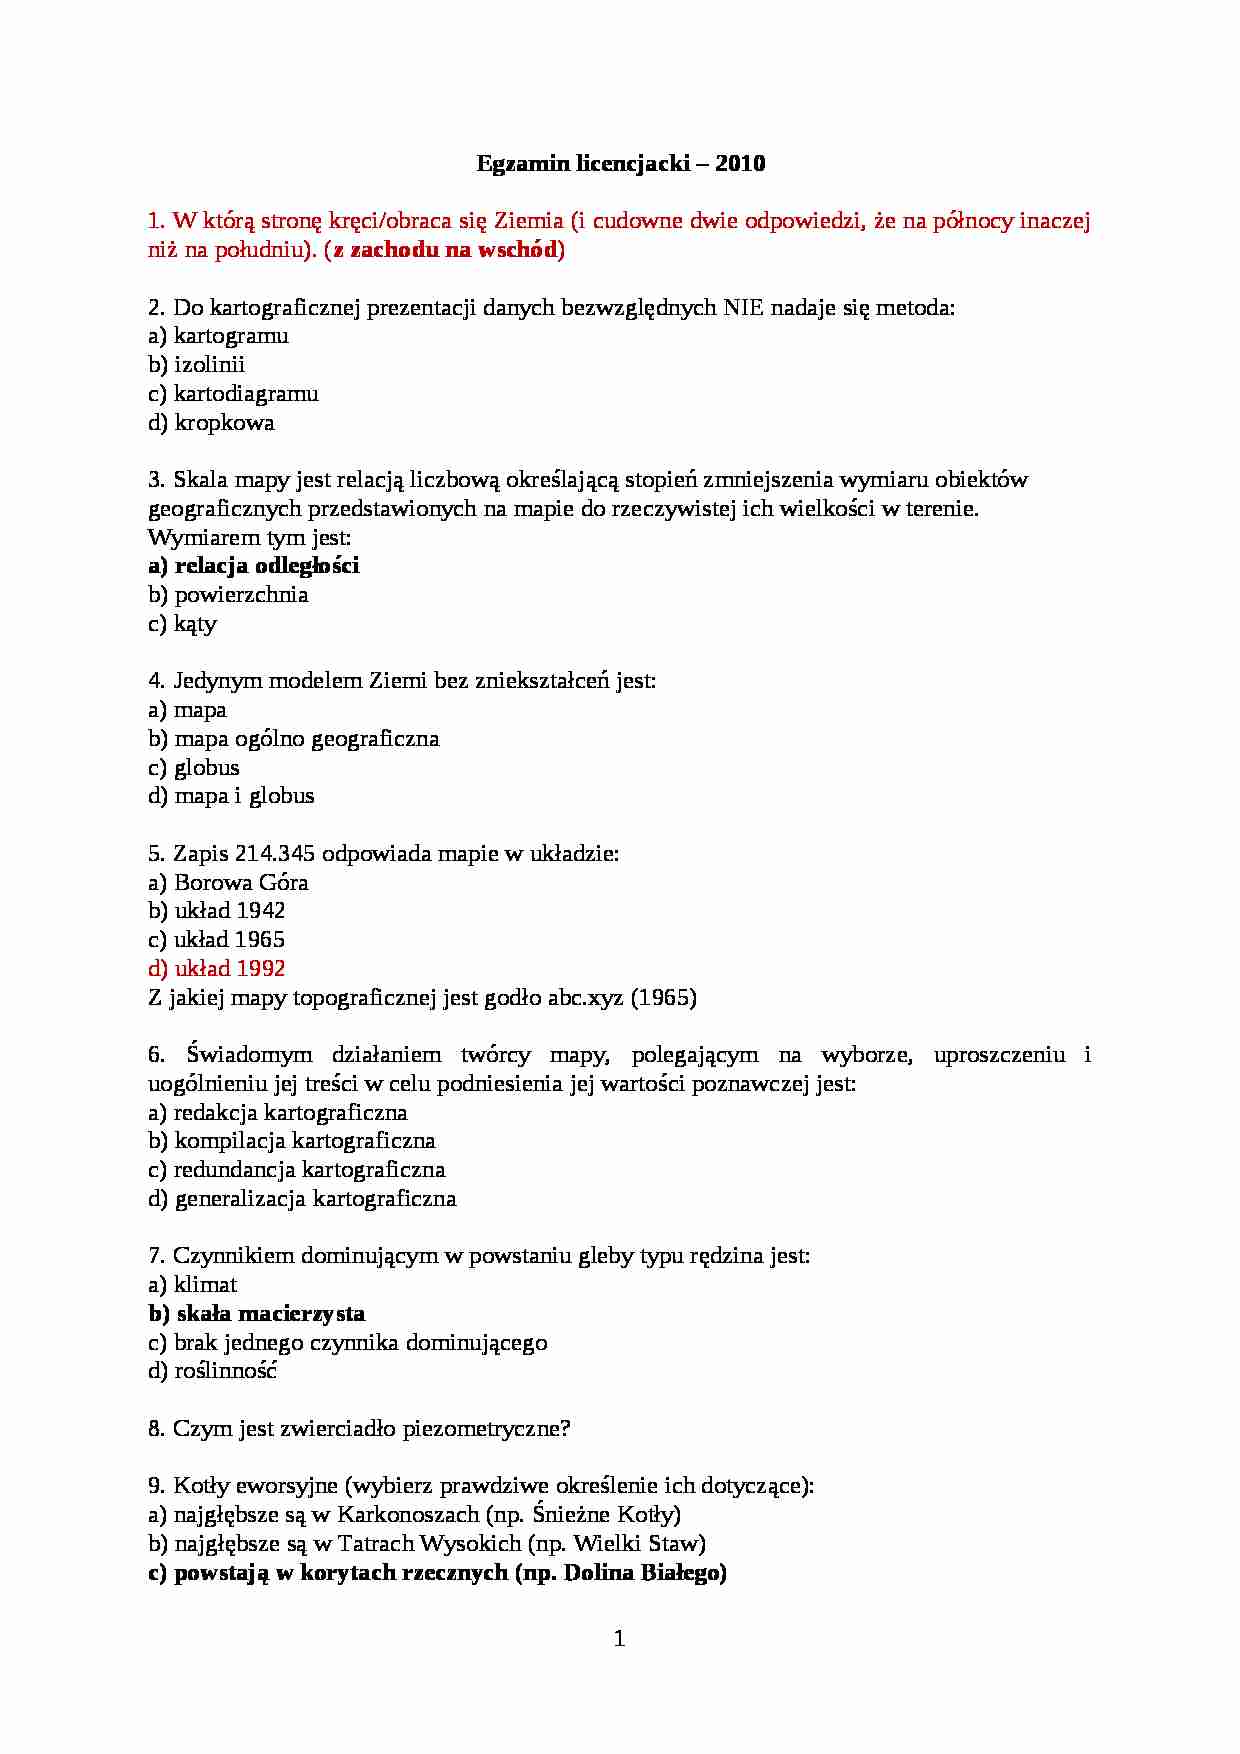 Egzamin licencjacki (1) - strona 1